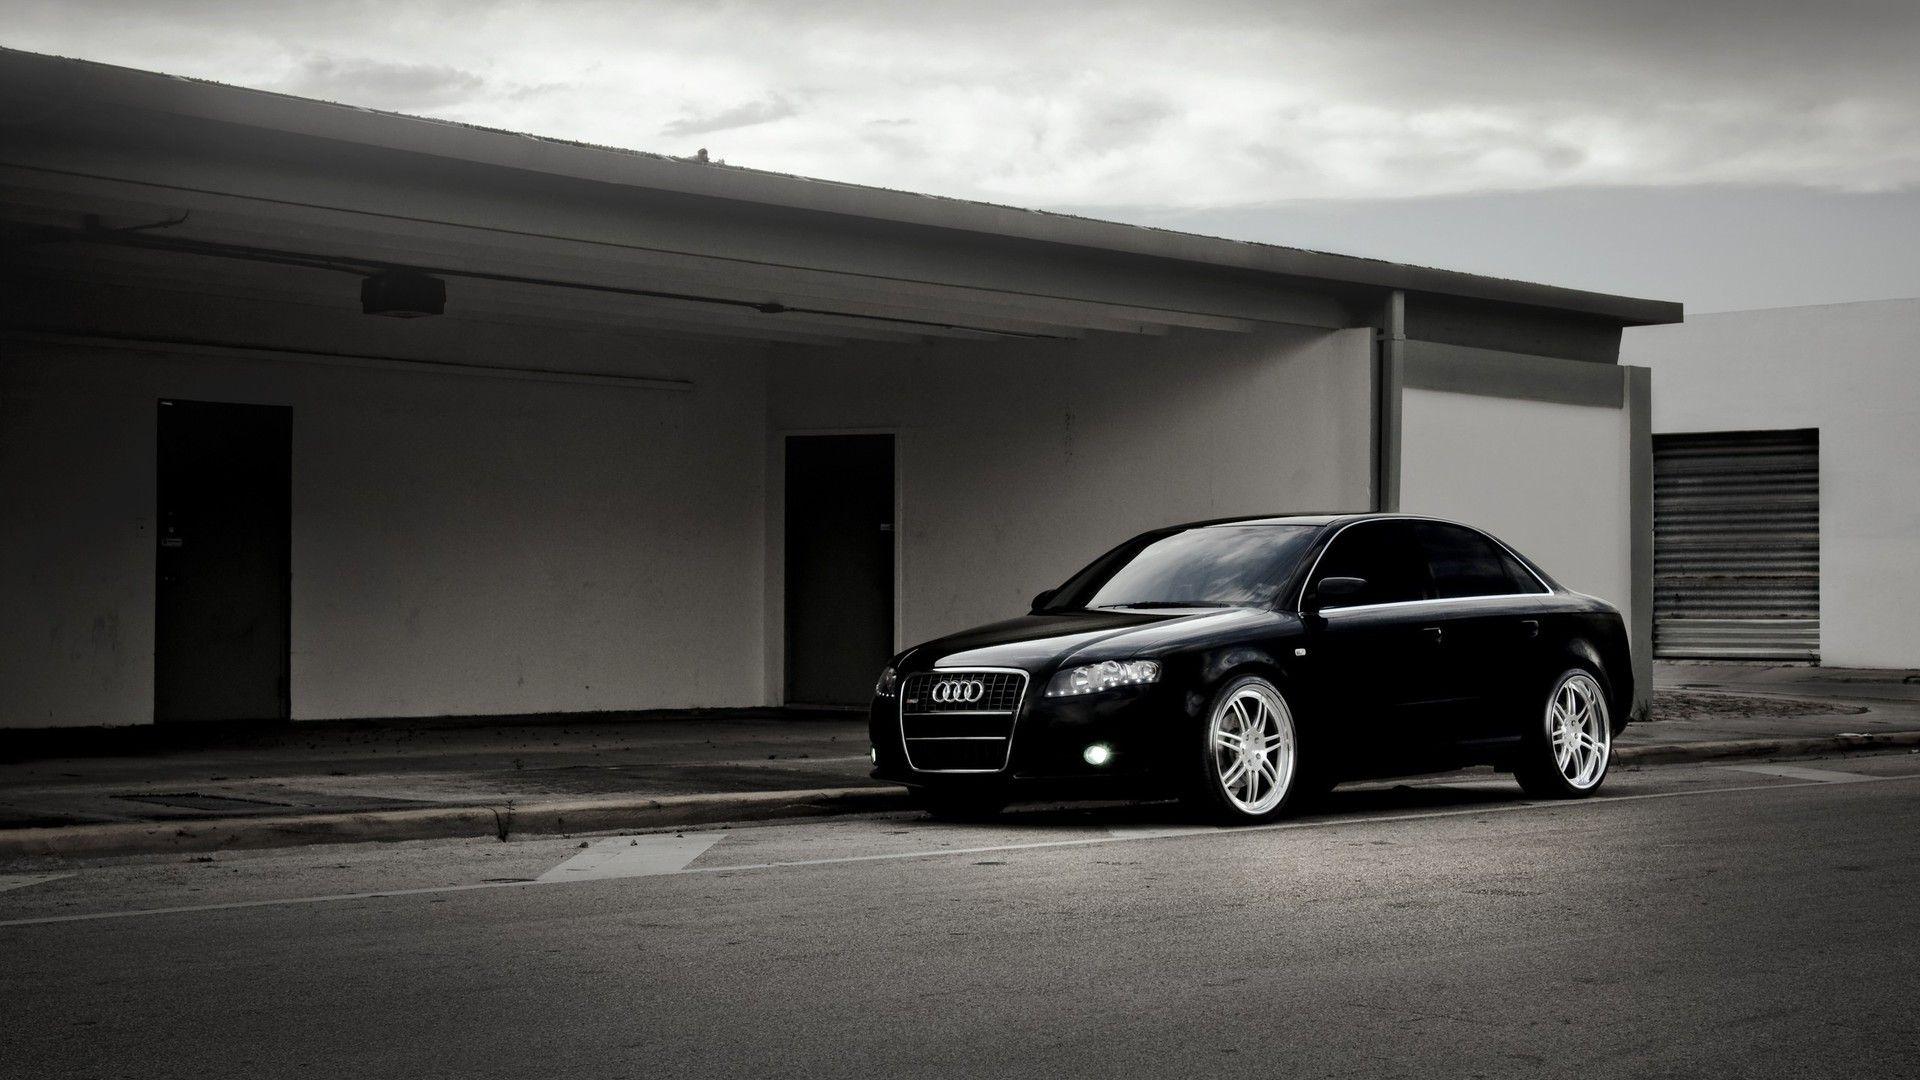 Audi A4 Wallpaper, Amazing 4K Ultra HD Audi A4 Picture